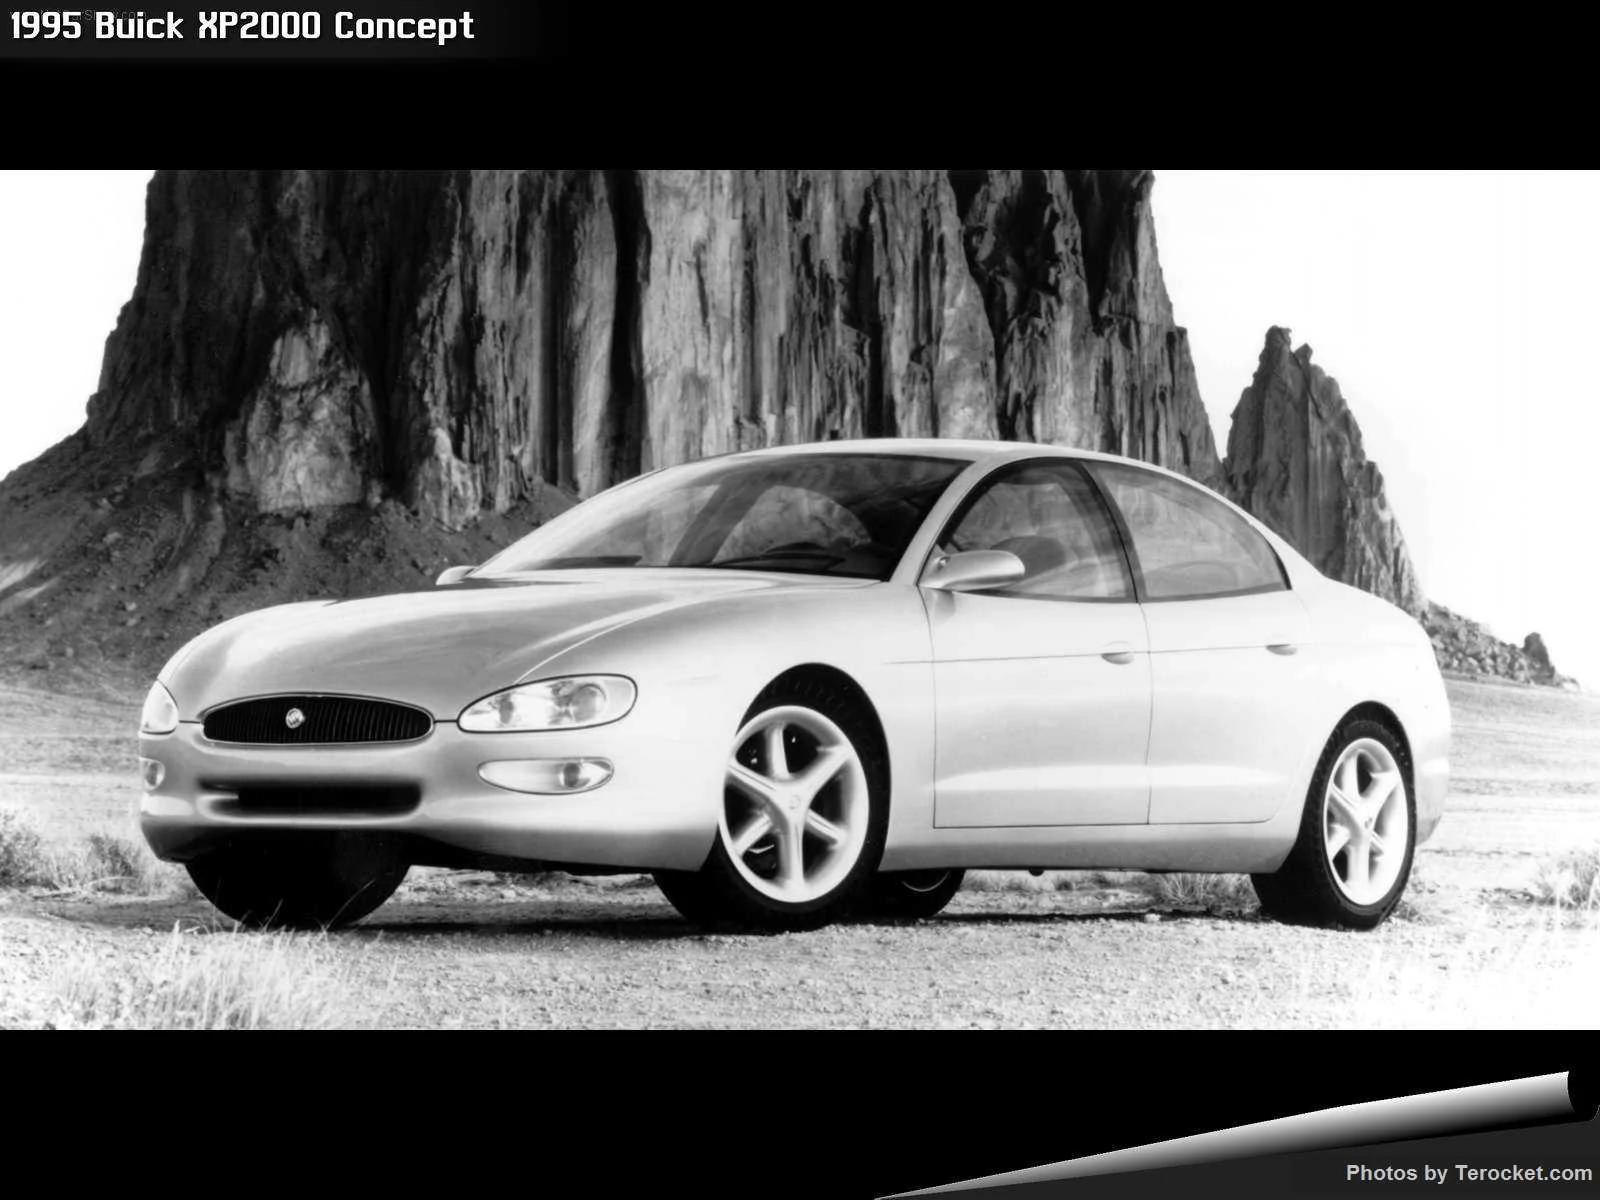 Hình ảnh xe ô tô Buick XP2000 Concept 1995 & nội ngoại thất